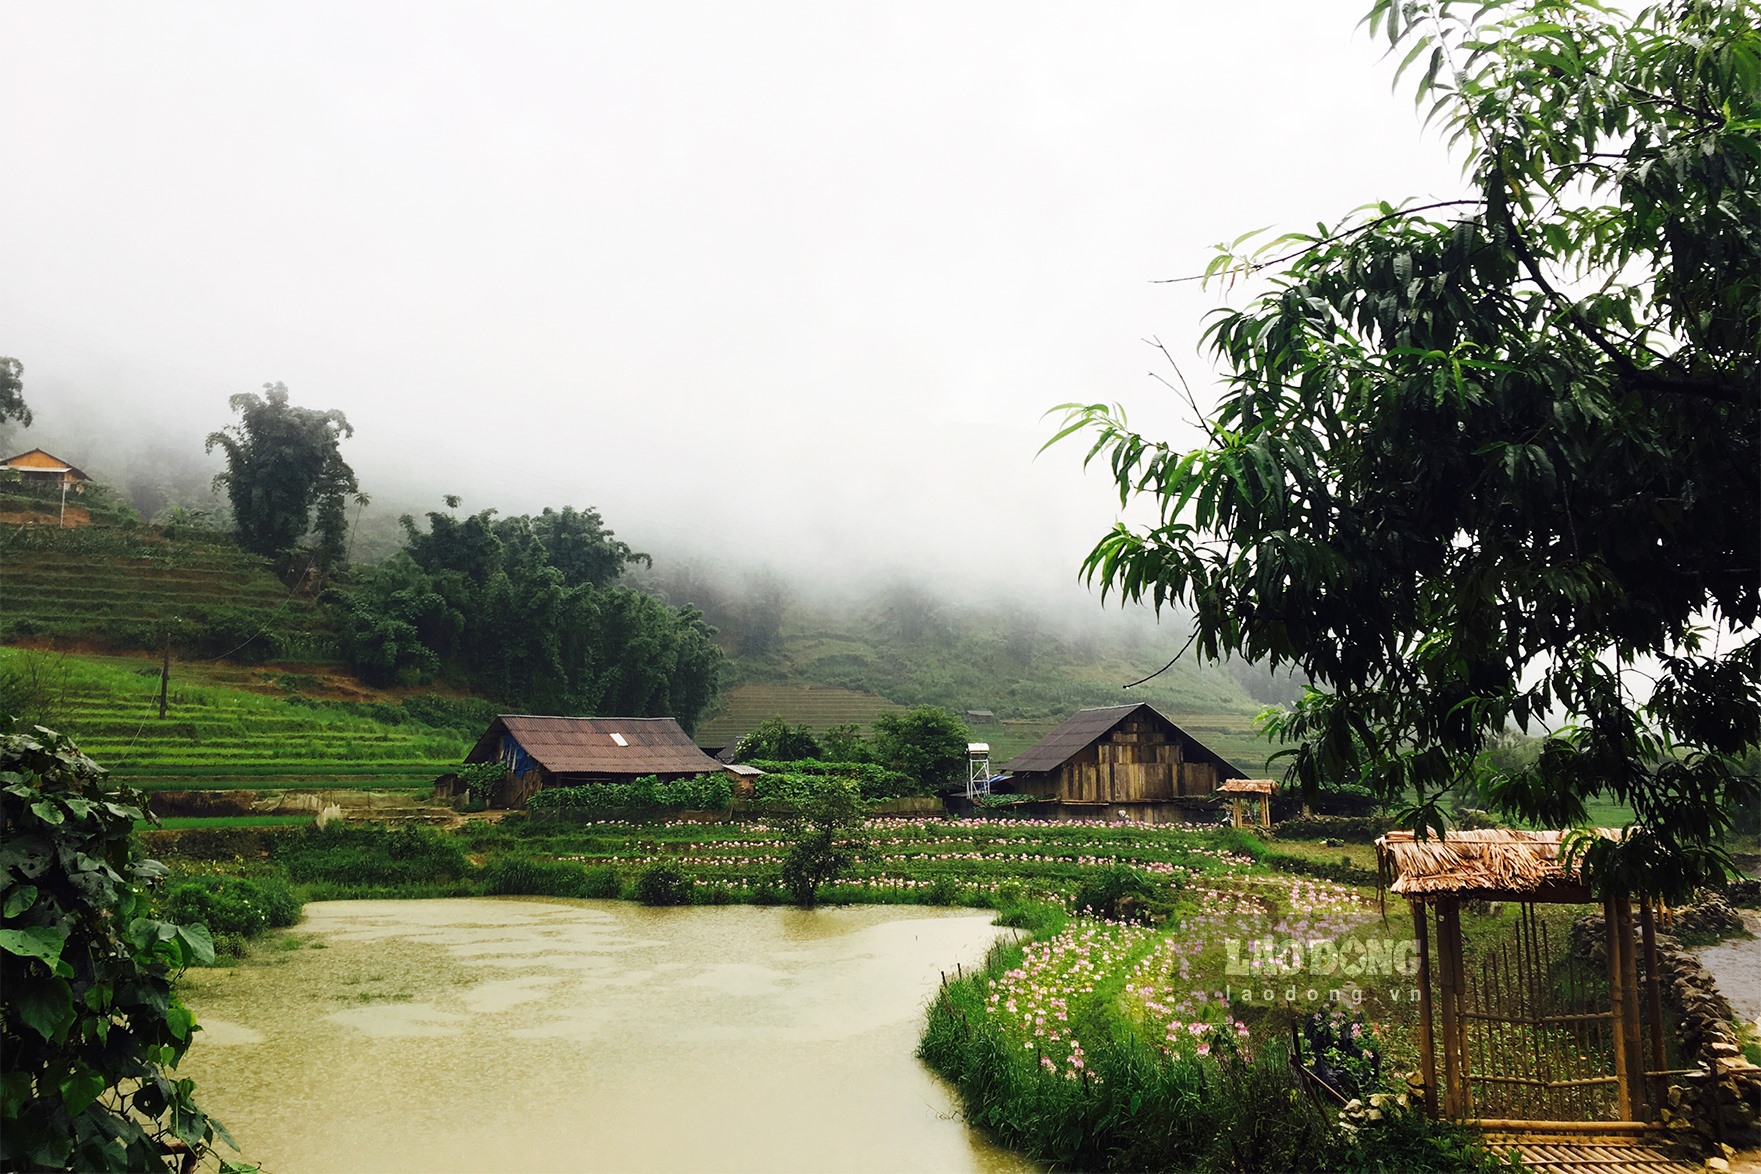 Ngôi làng là nơi gắn bó với nhiều kỷ niệm của đời sống vùng quê Việt Nam. Điều đặc biệt ở những ngôi làng đó là không khí thanh bình, những người dân thân thiện, tràn đầy nụ cười. Hãy cùng đến với hình ảnh của một ngôi làng để trở về với một thế giới yên bình và đầy tình cảm.